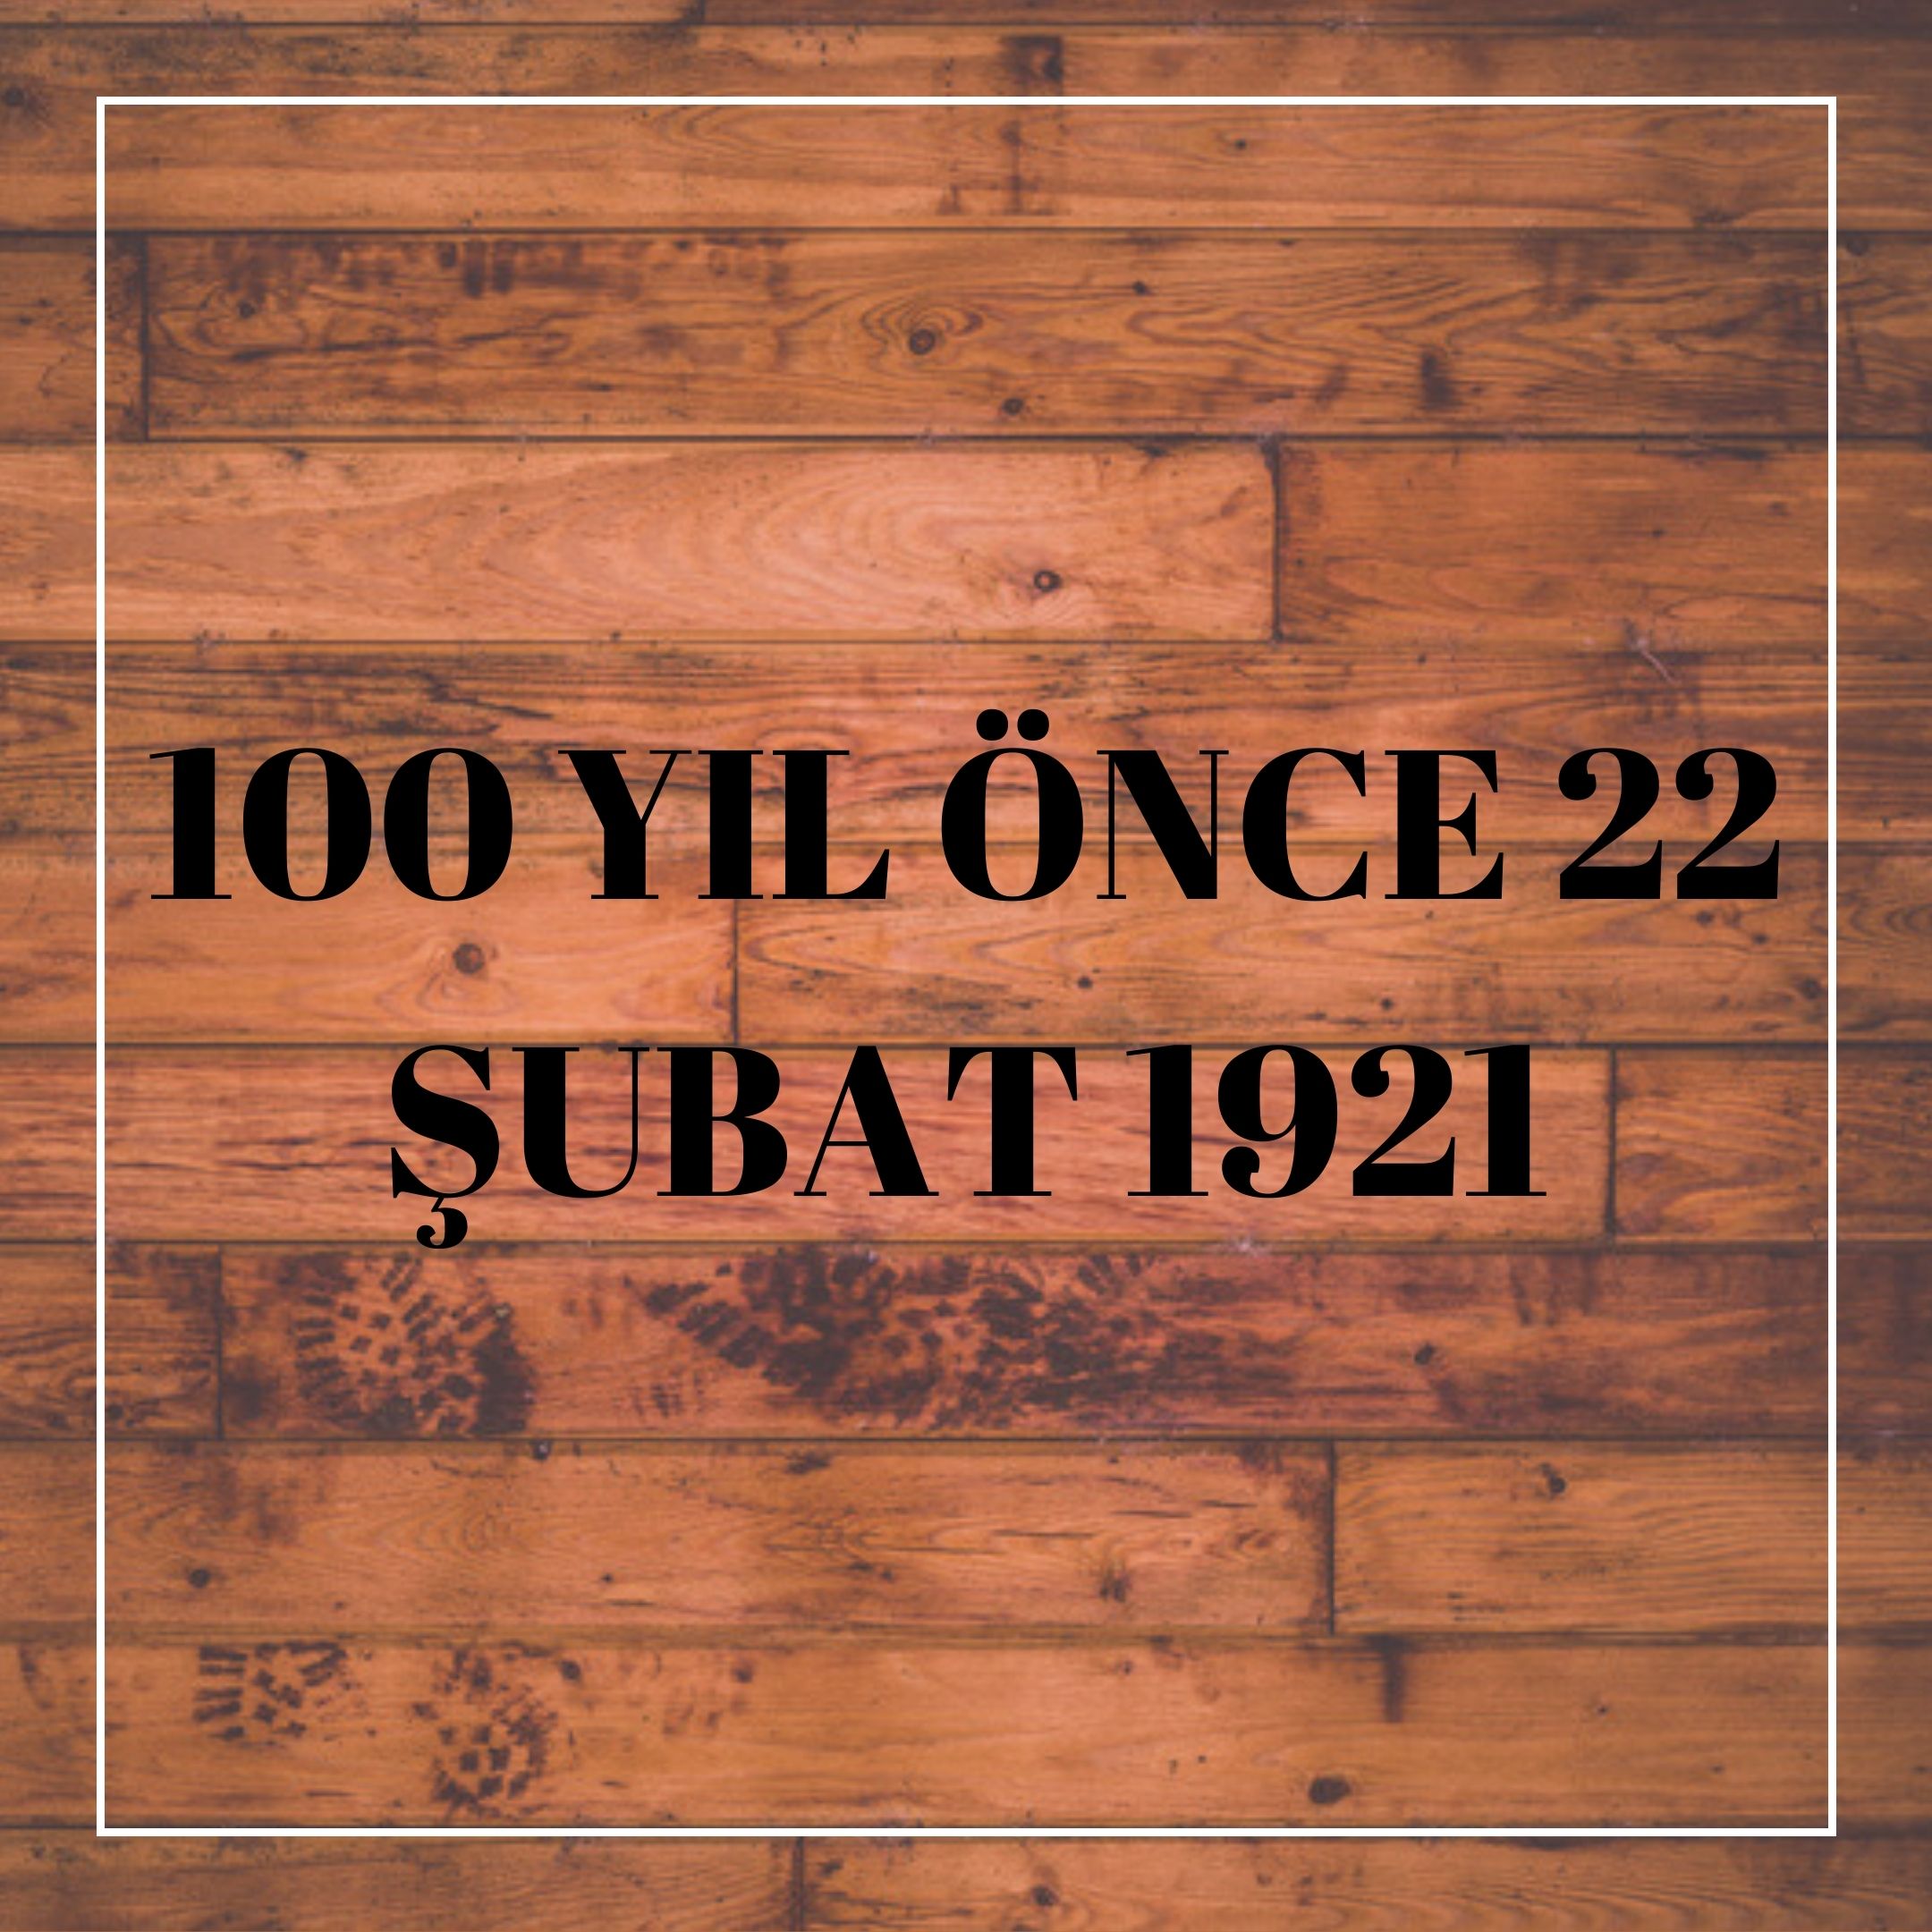  100 YIL ÖNCE 22 ŞUBAT 1921